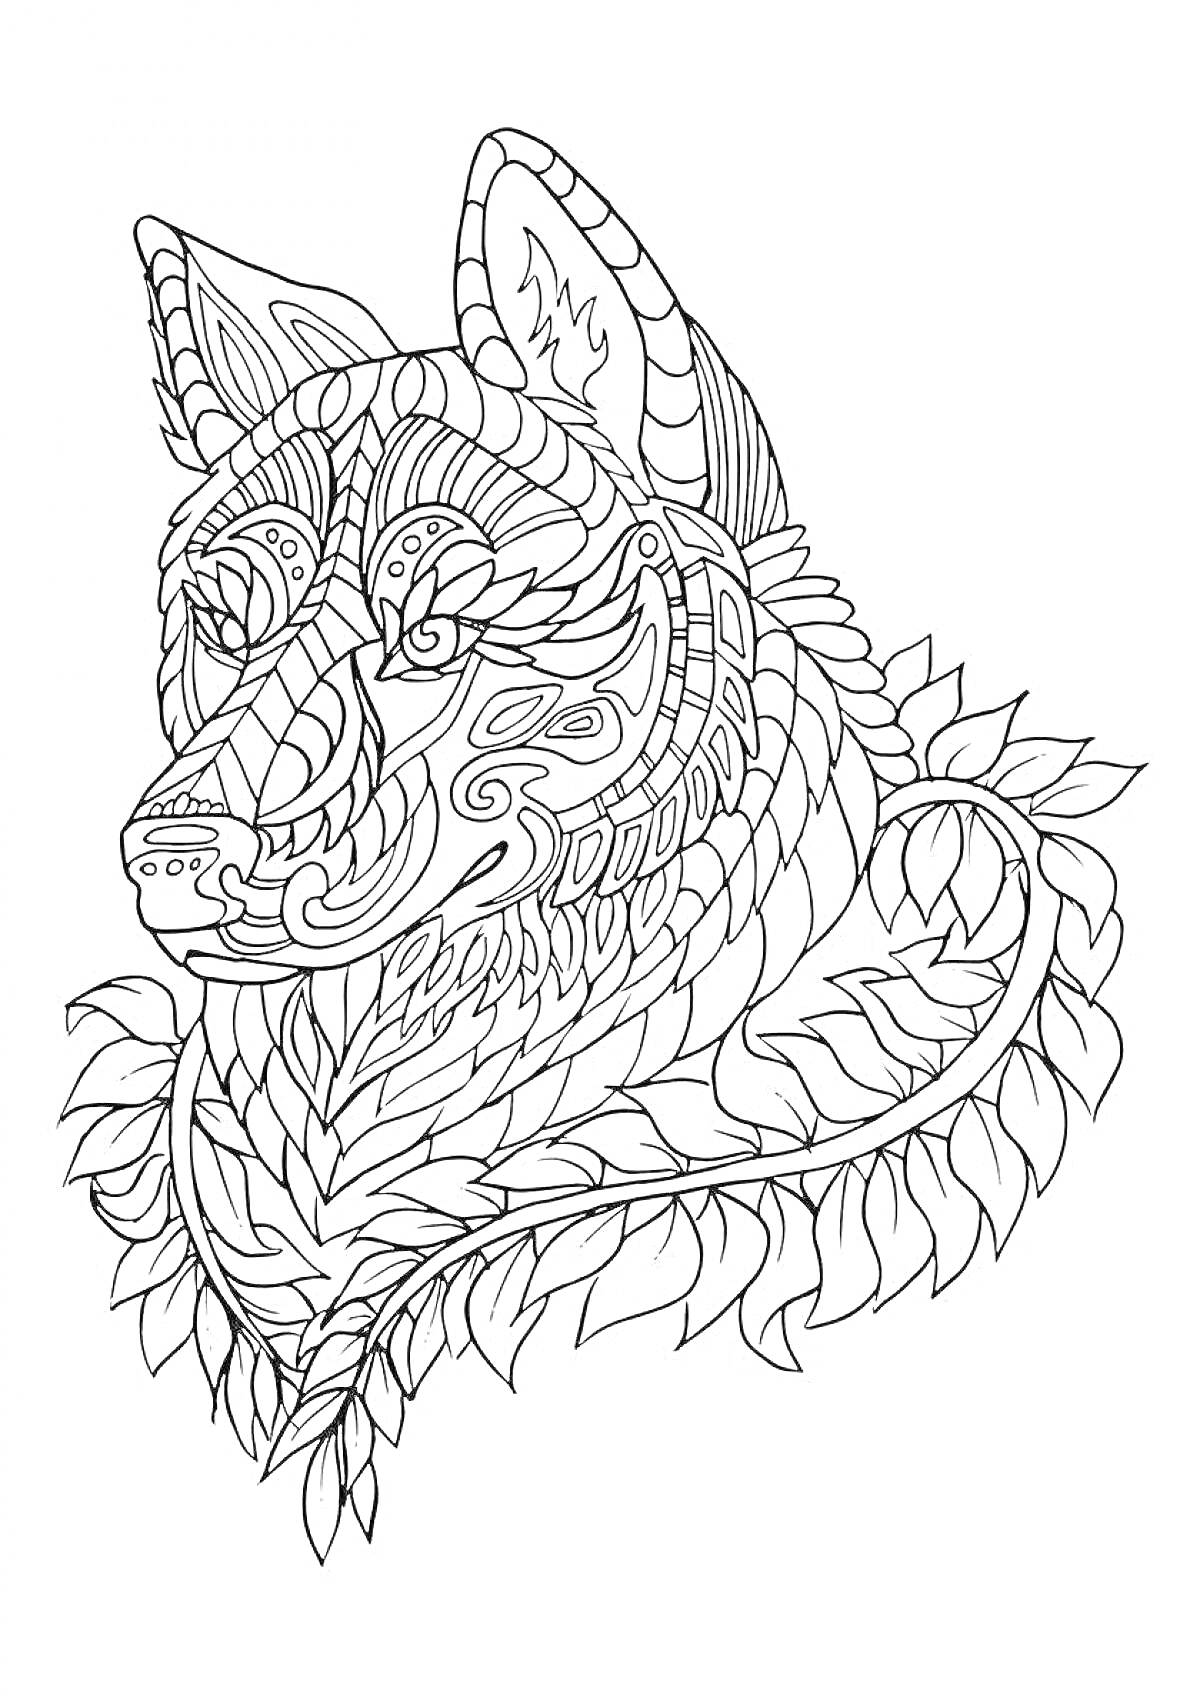 Раскраска Волк с орнаментом, сложный узор из линий и форм, напоминающий перья и листья